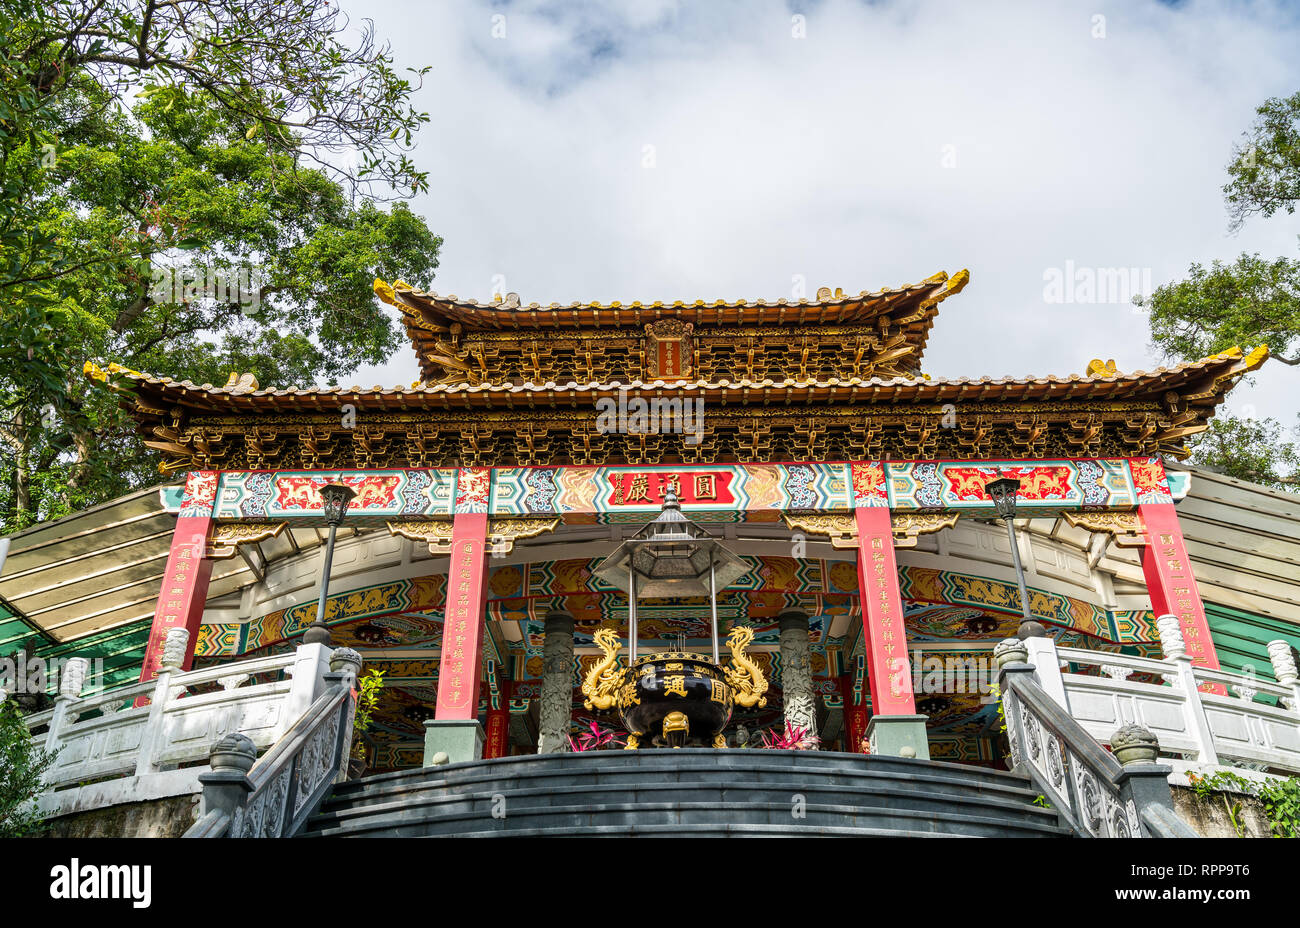 Yuantong Rock Temple in Changshou Park - Taipei, Taiwan Stock Photo